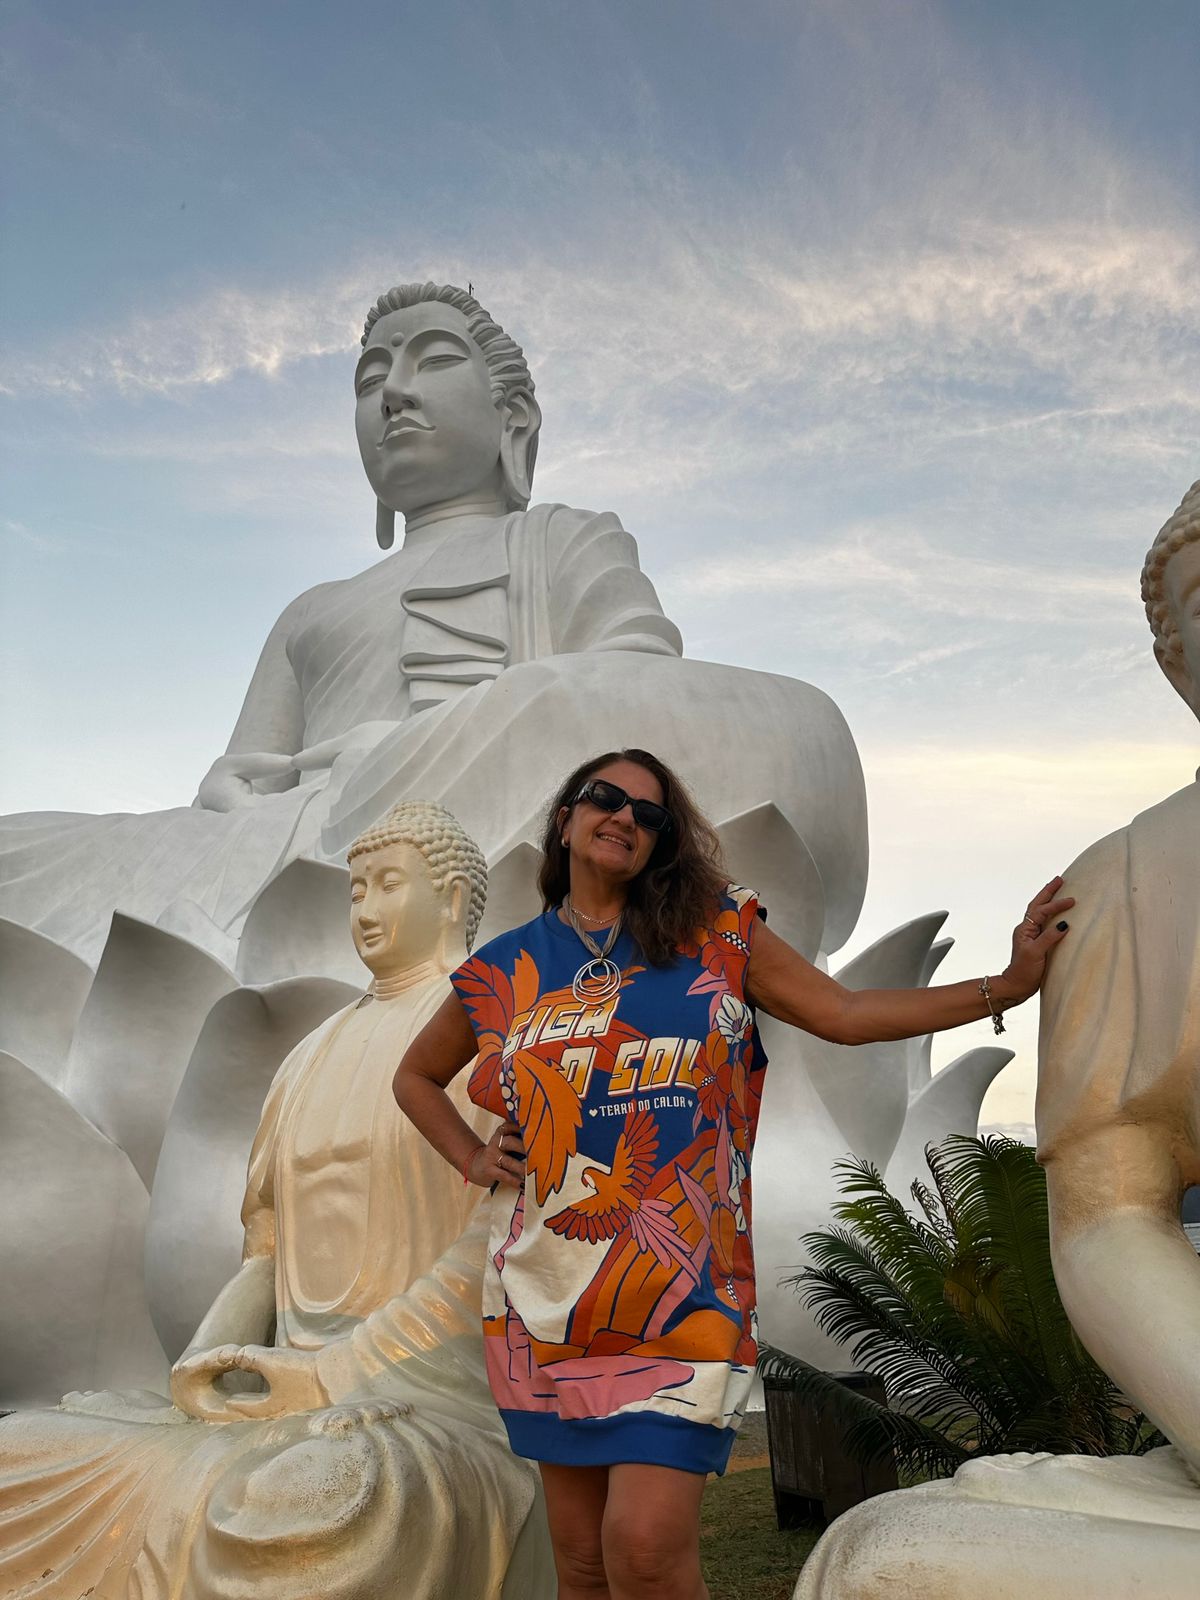 O maior Buda do Ocidente e fica no Brasil